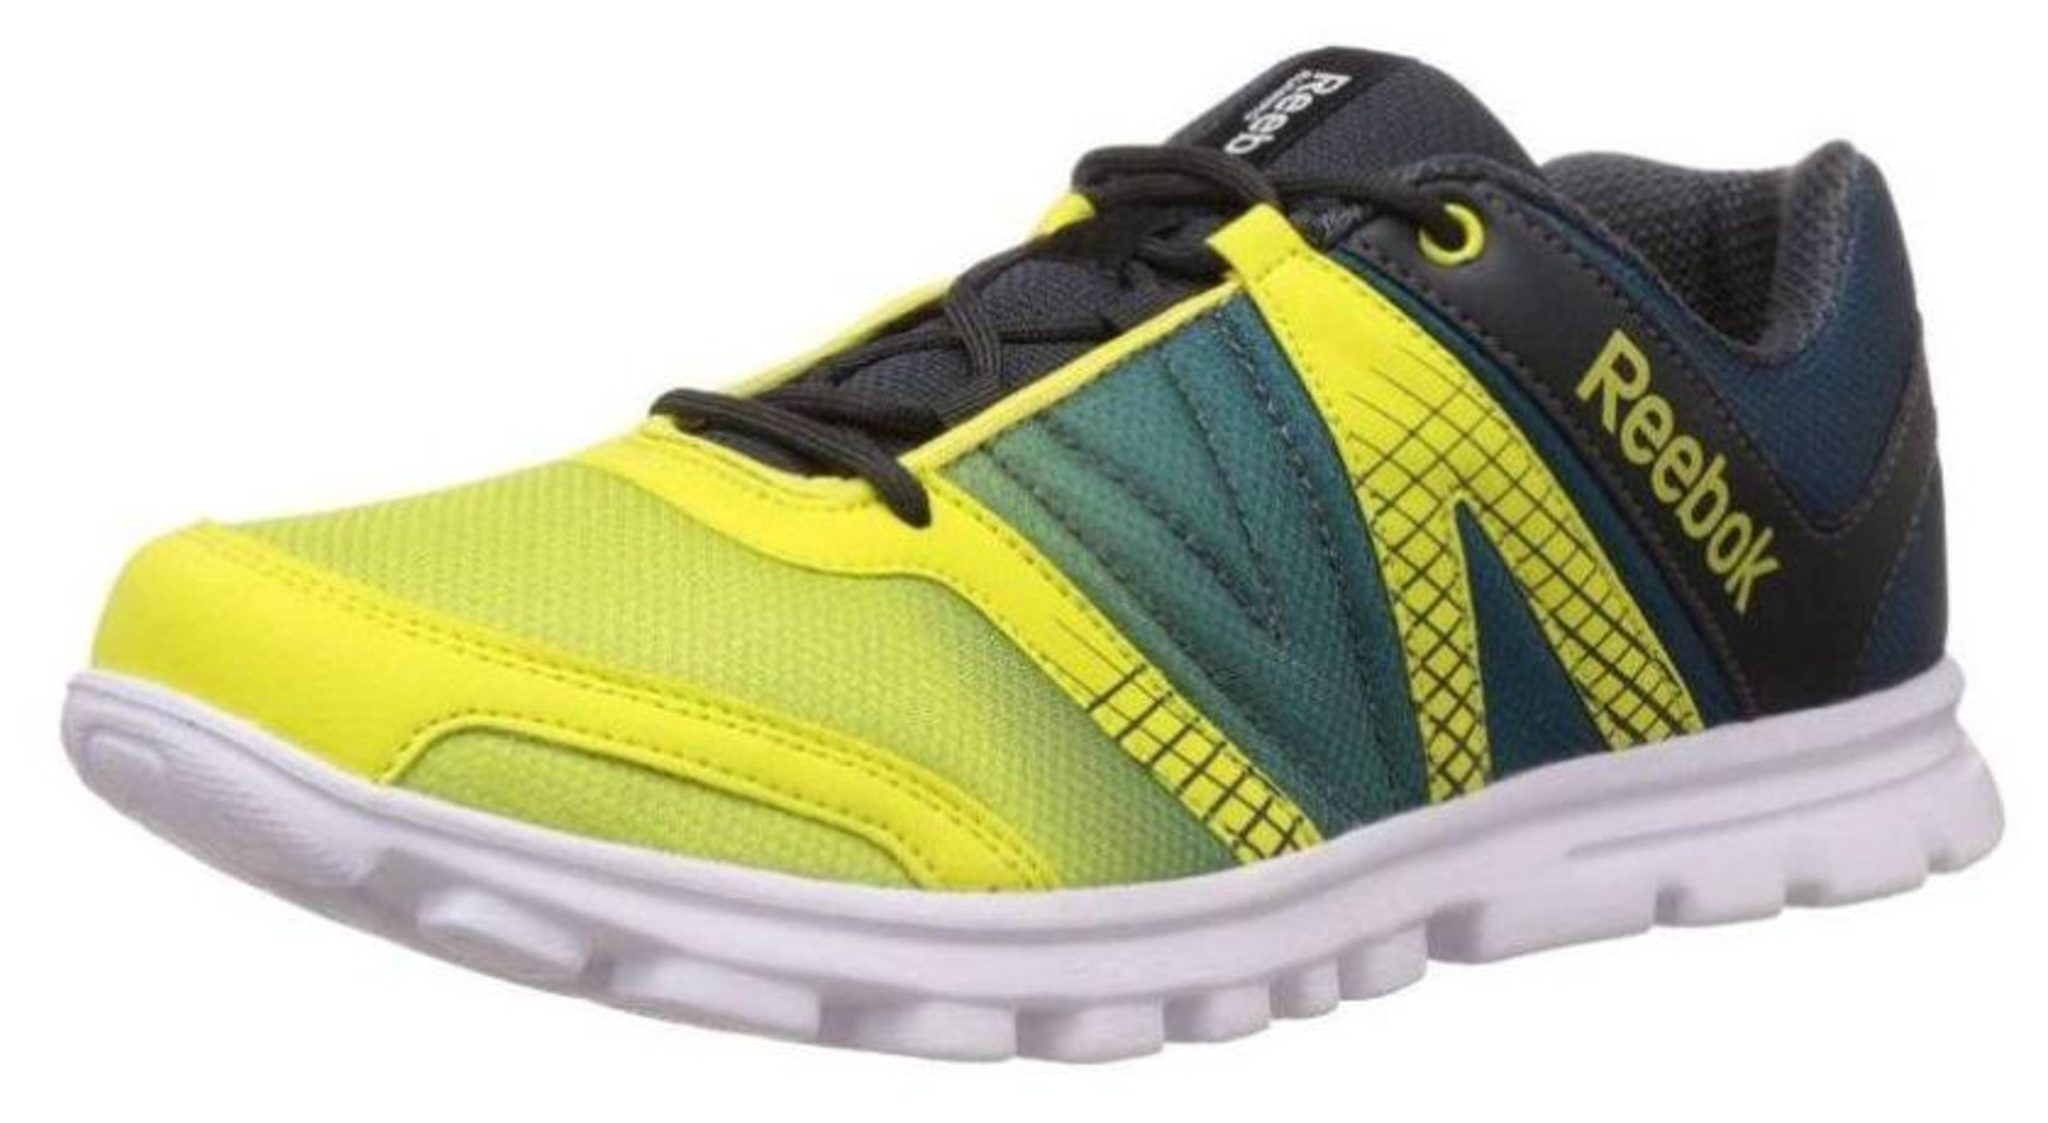 Buy Reebok Men's Yellow Sports Shoe Online - Get 50% Off